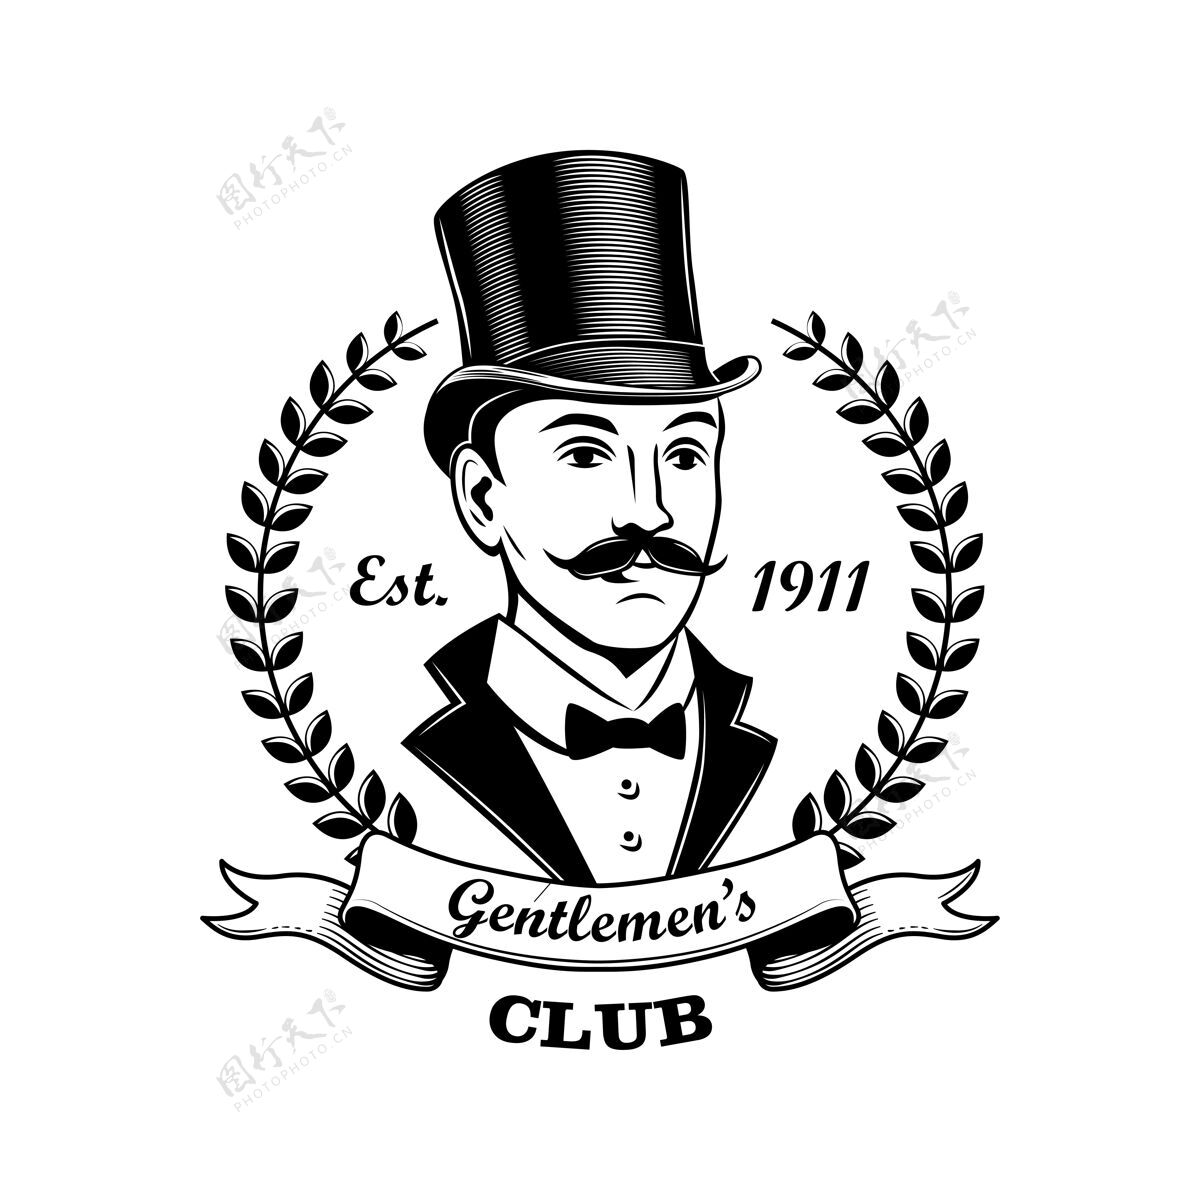 圆柱体绅士俱乐部徽章矢量插图男人在吸烟和顶帽子 桂冠花圈框架酒吧 酒吧或商店的概念标签或徽章模板桂冠酒吧书法